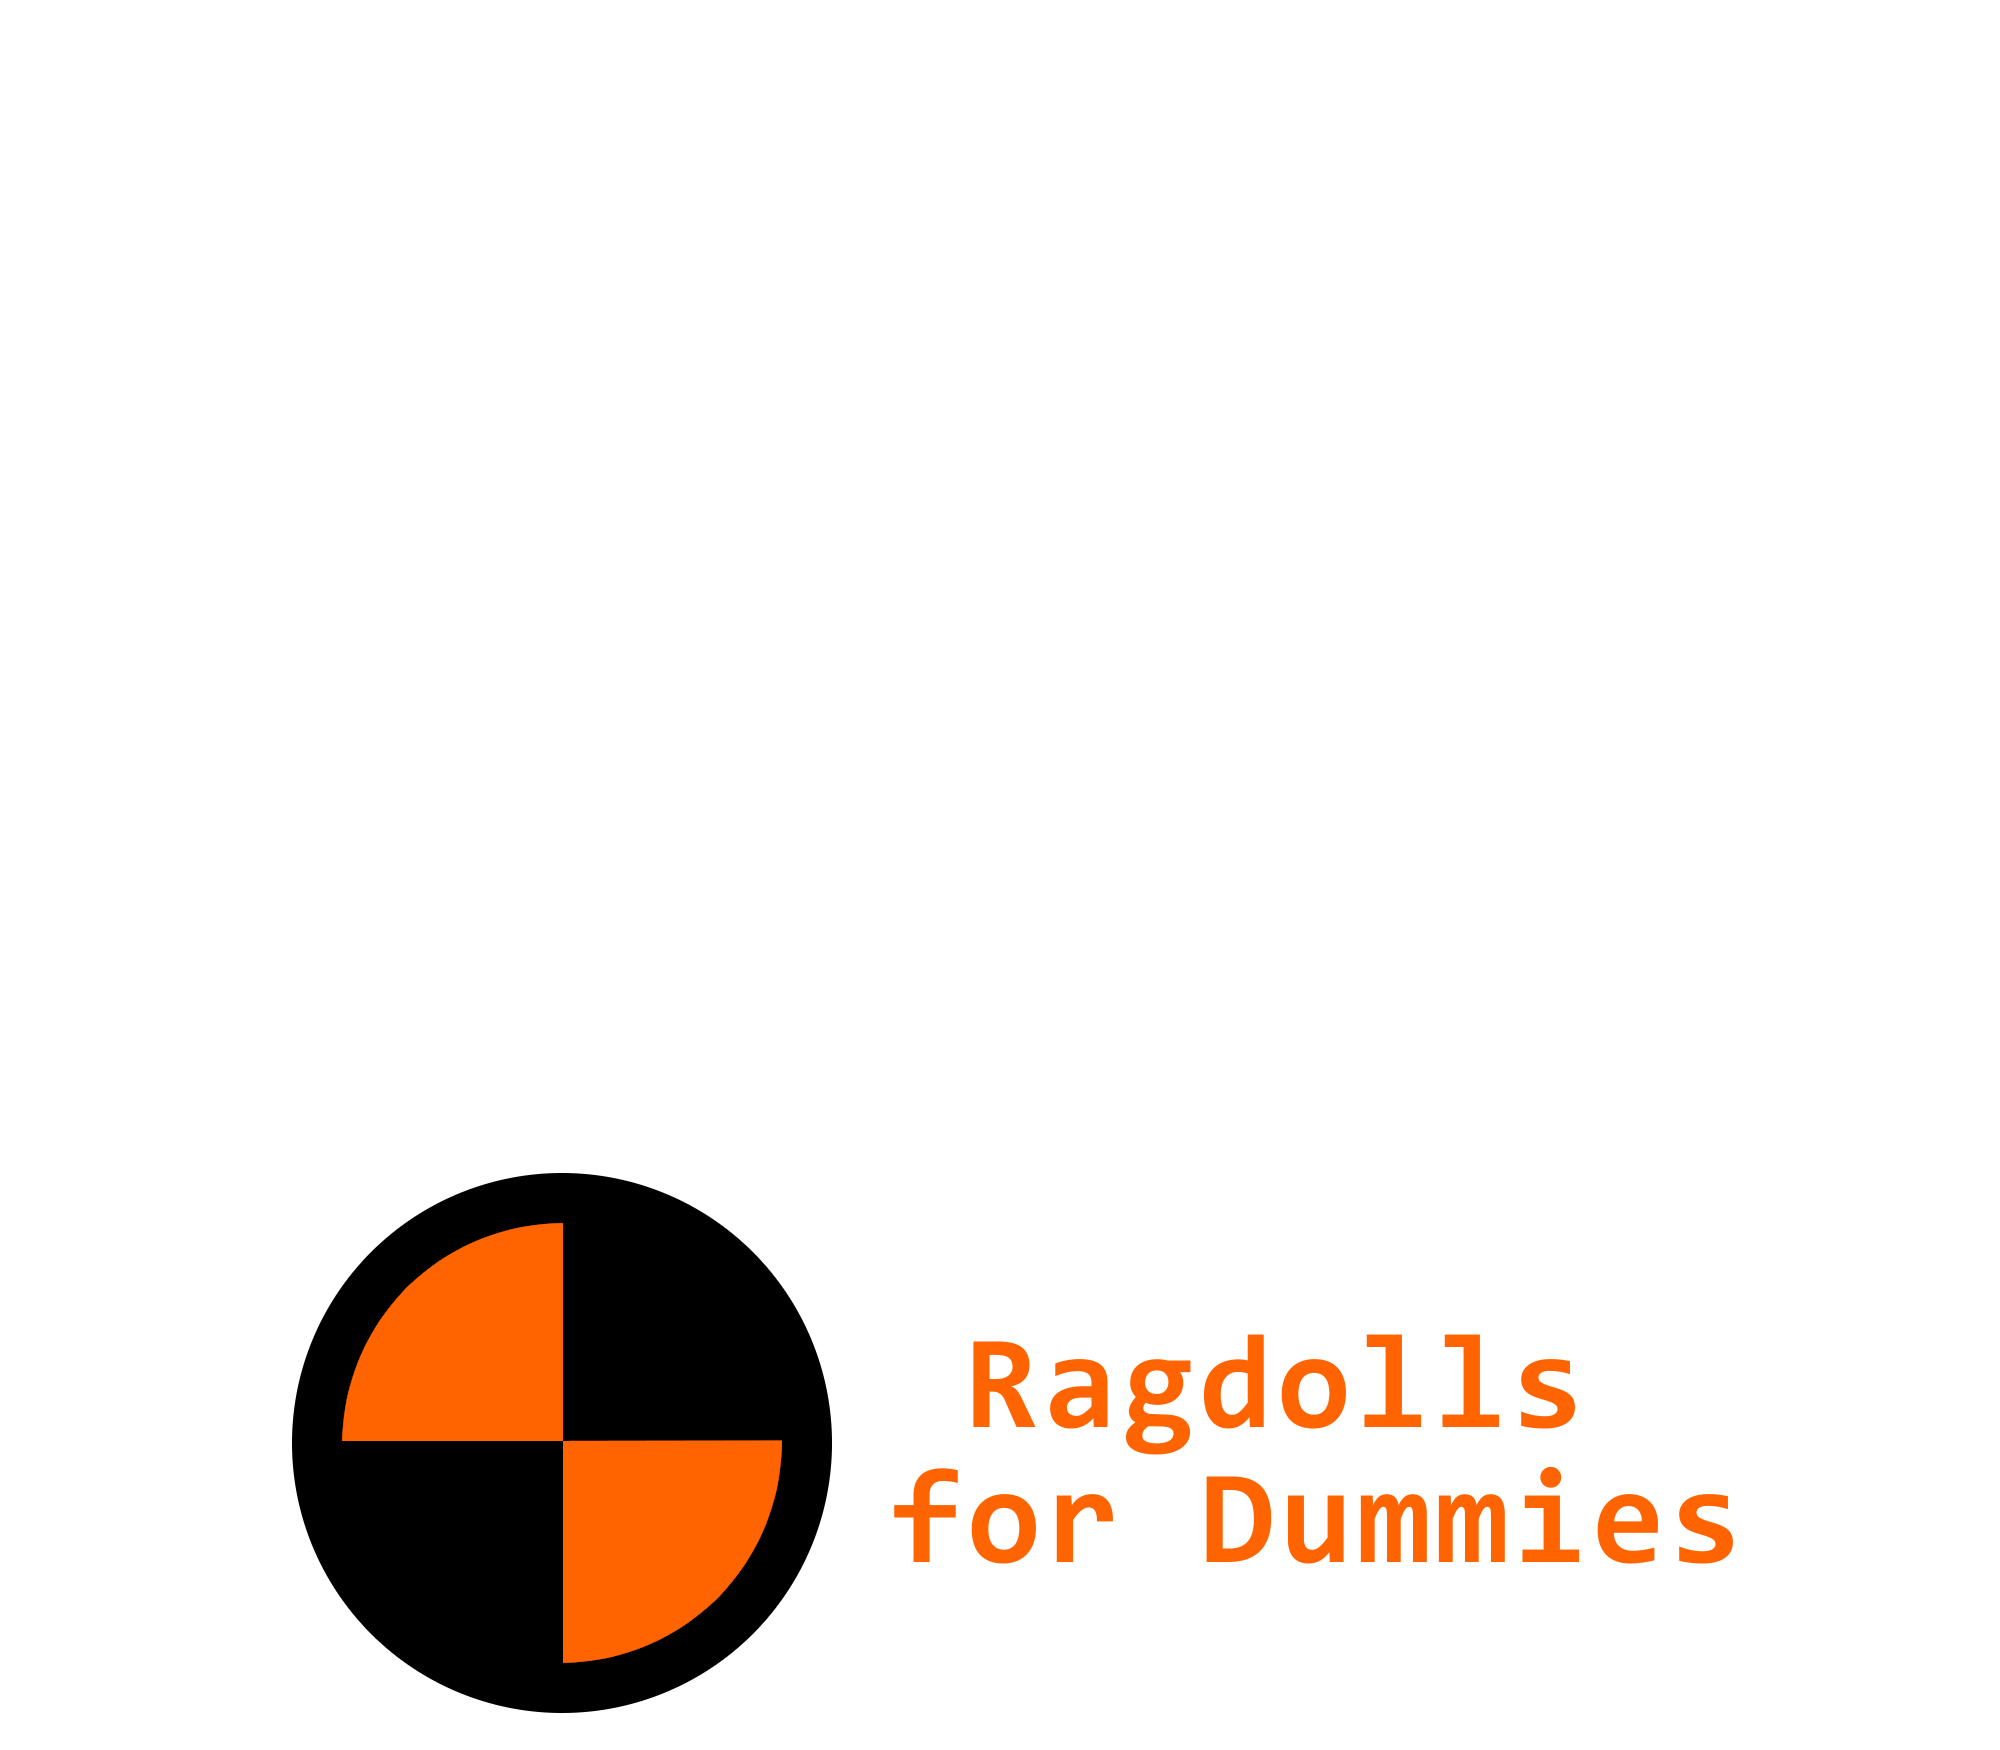 Ragdolls for Dummies